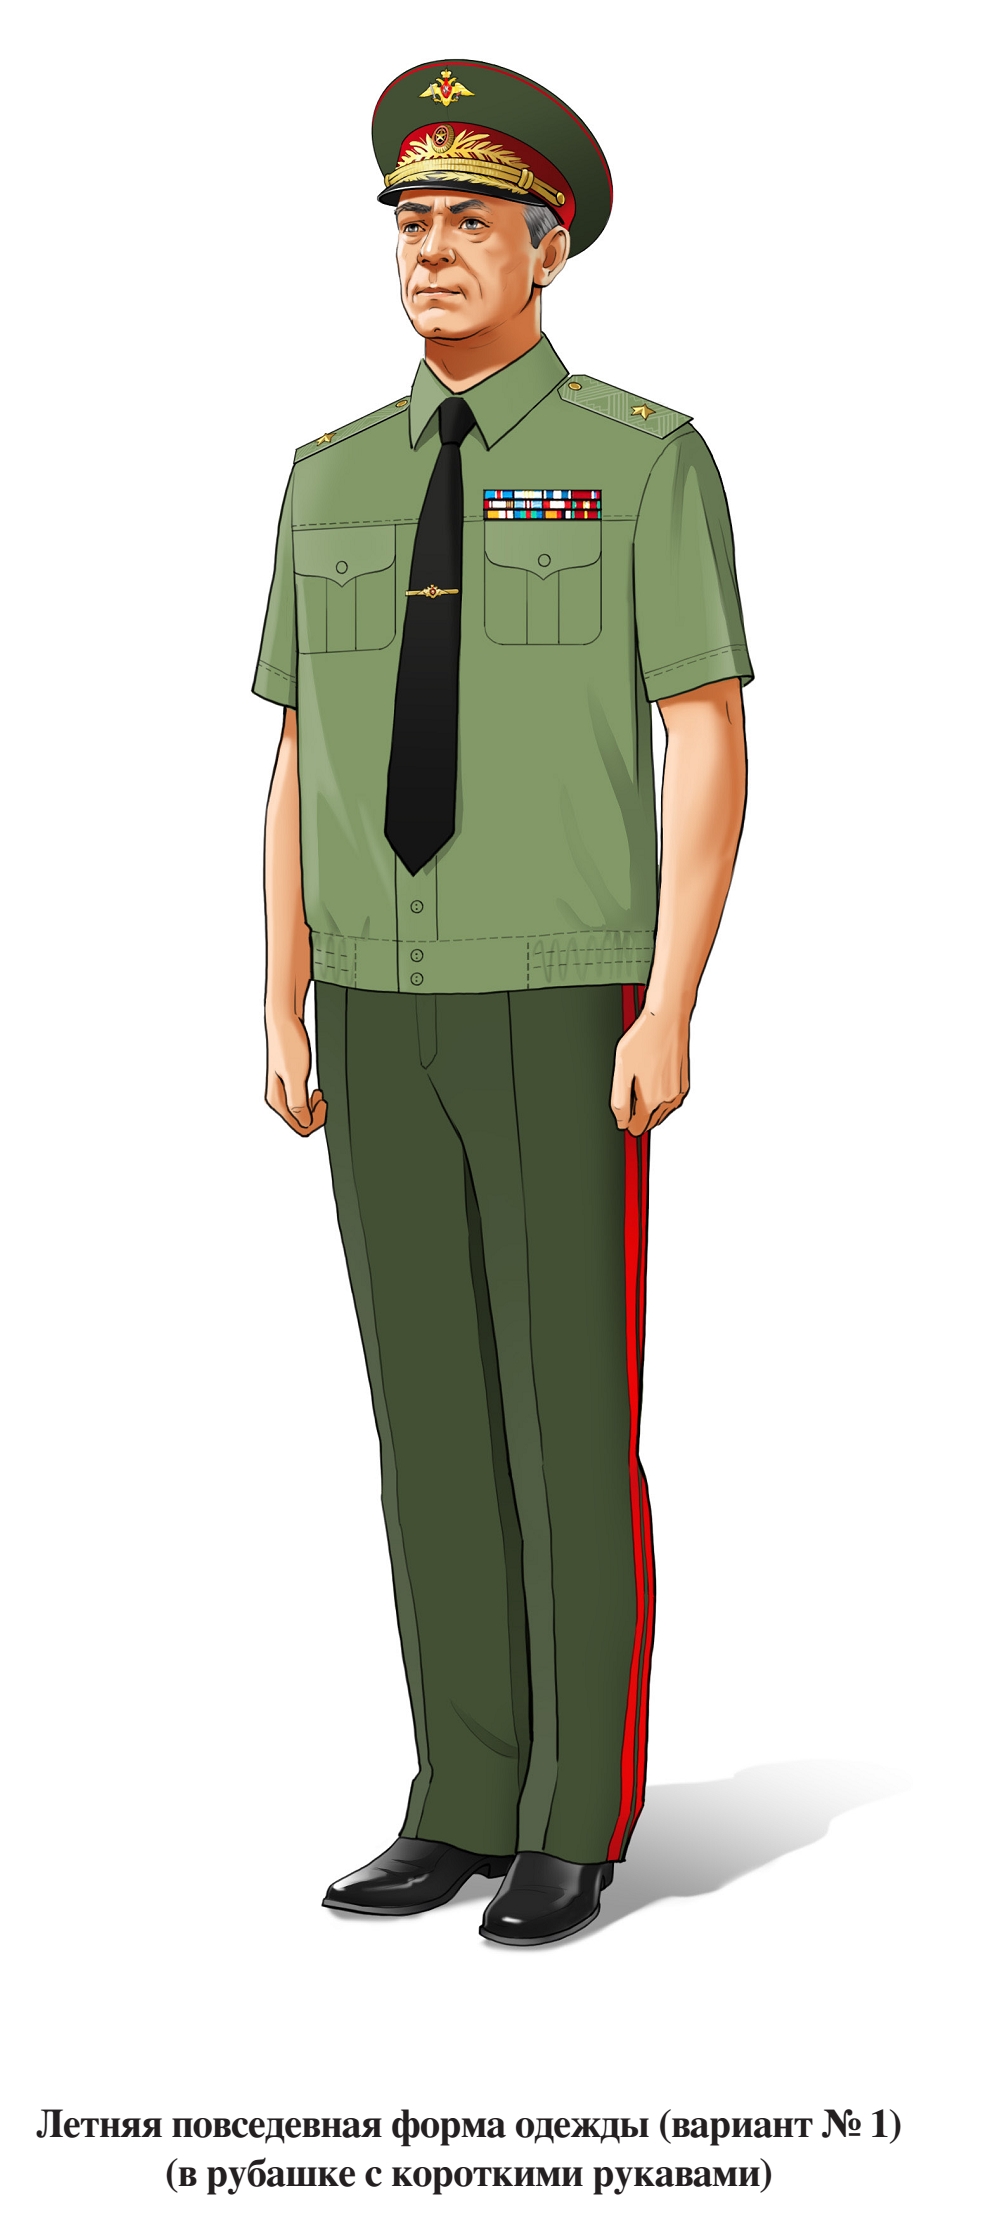 Генерал, летняя повседневная форма, в рубашке с коротким рукавом